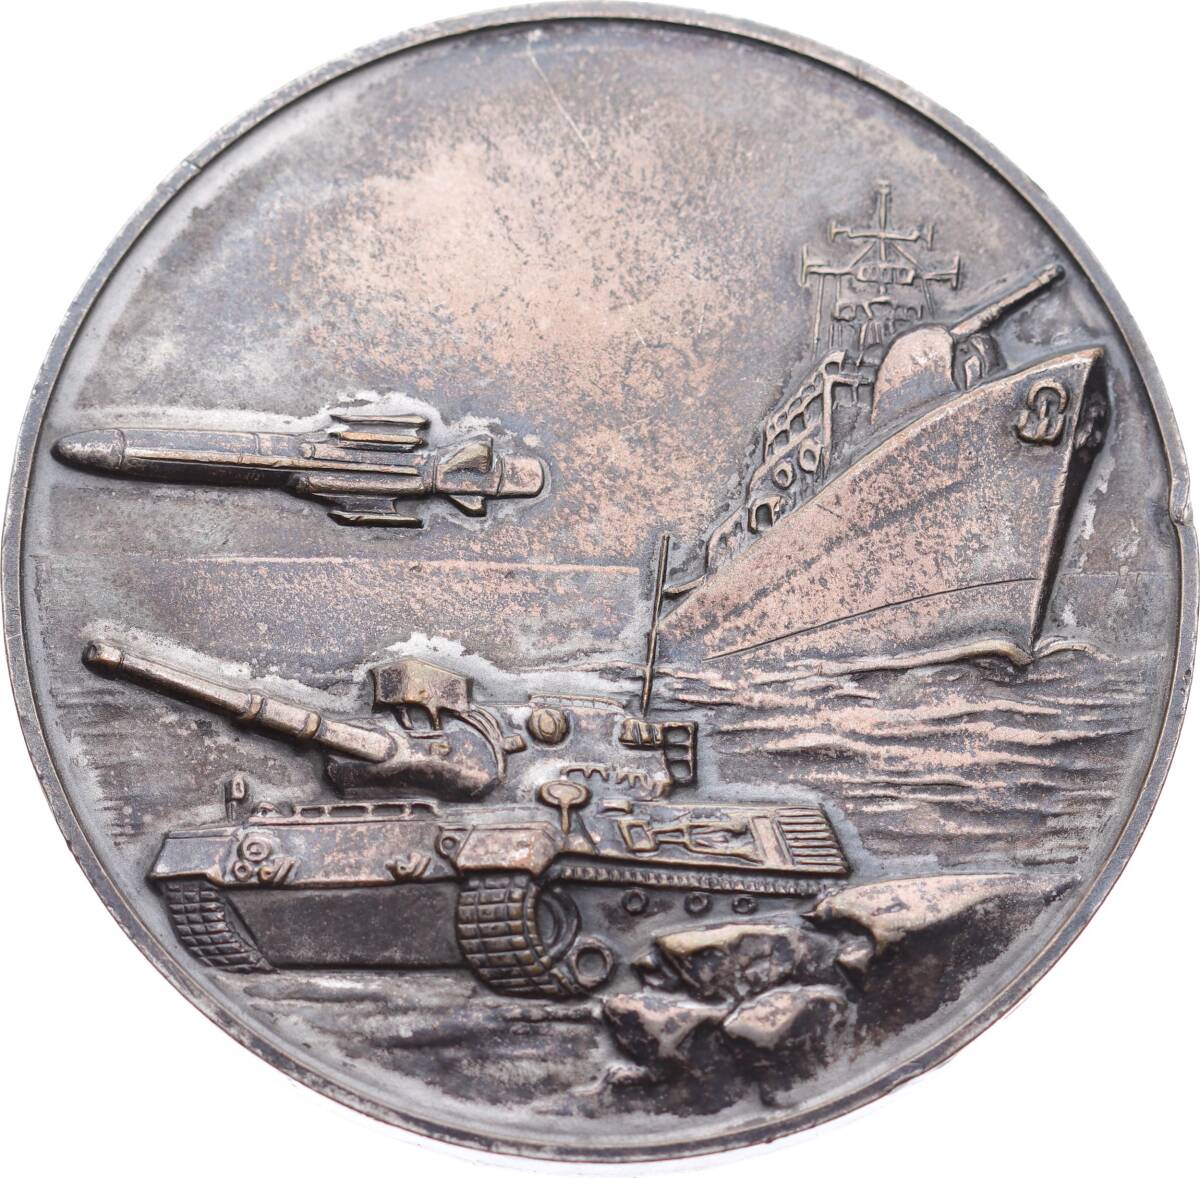 Büyük Boy NATO Gümüş Kaplama Savaş Madalyası MVM1192 - 2